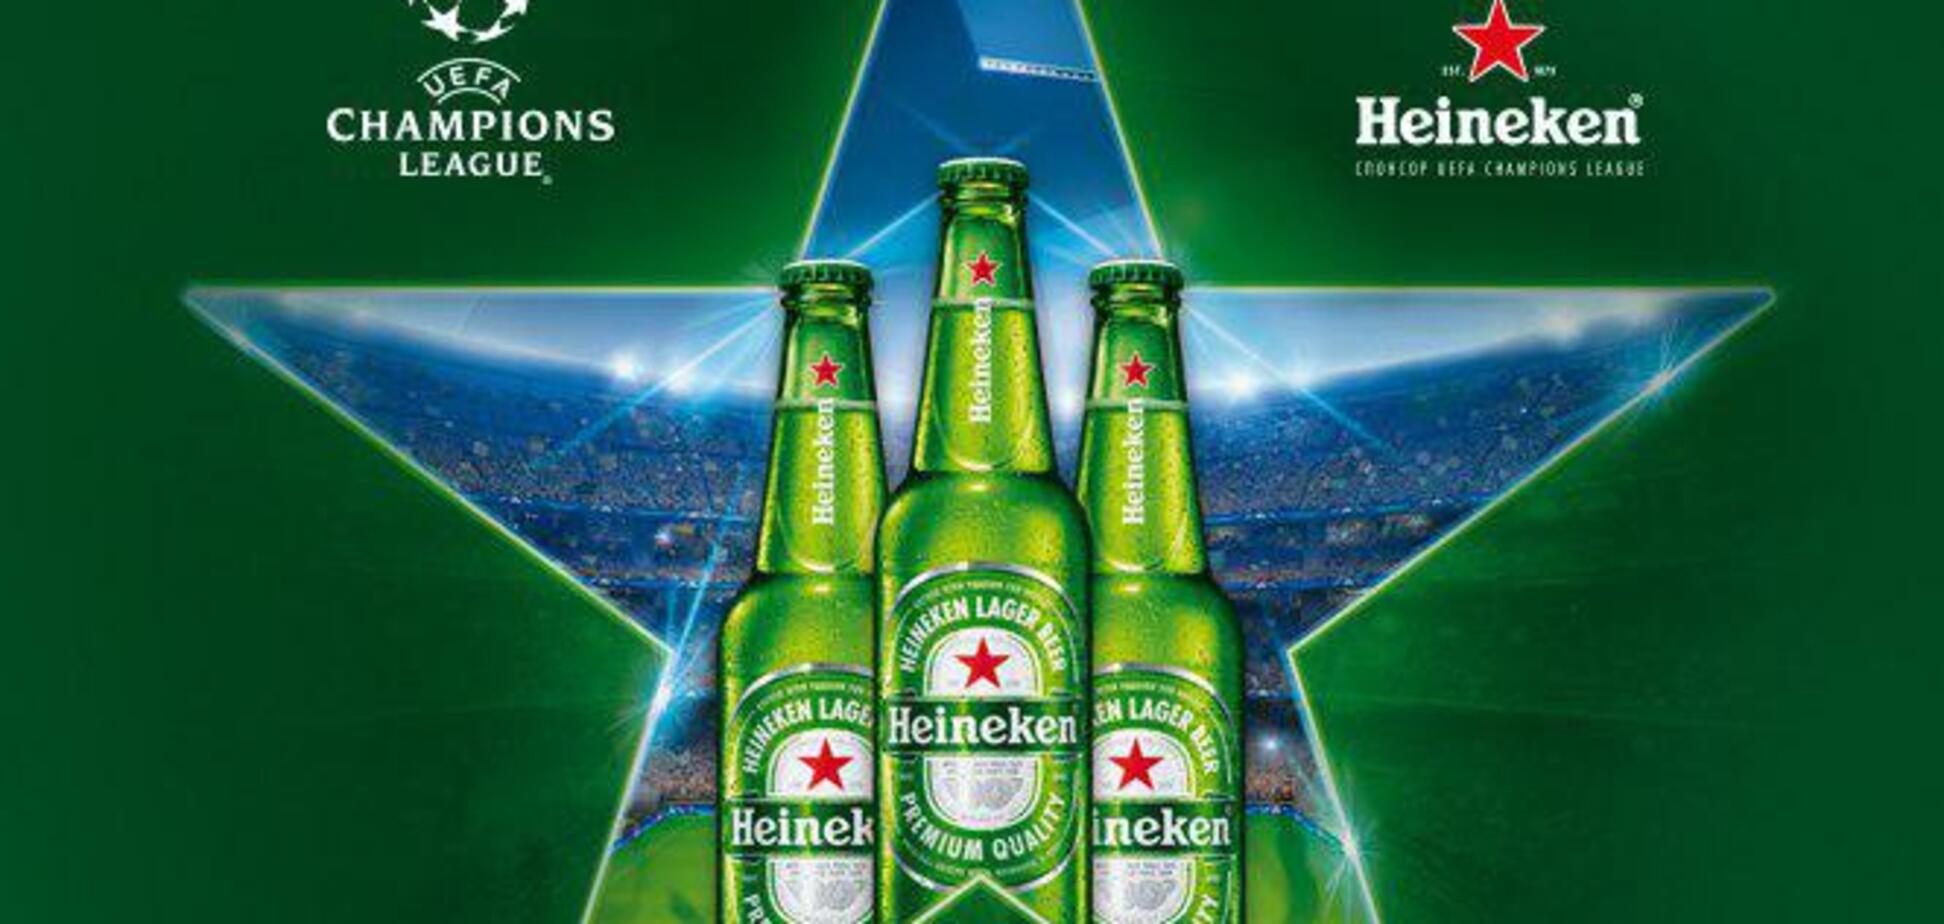 Бренд Heineken провел социальный эксперимент в Киеве